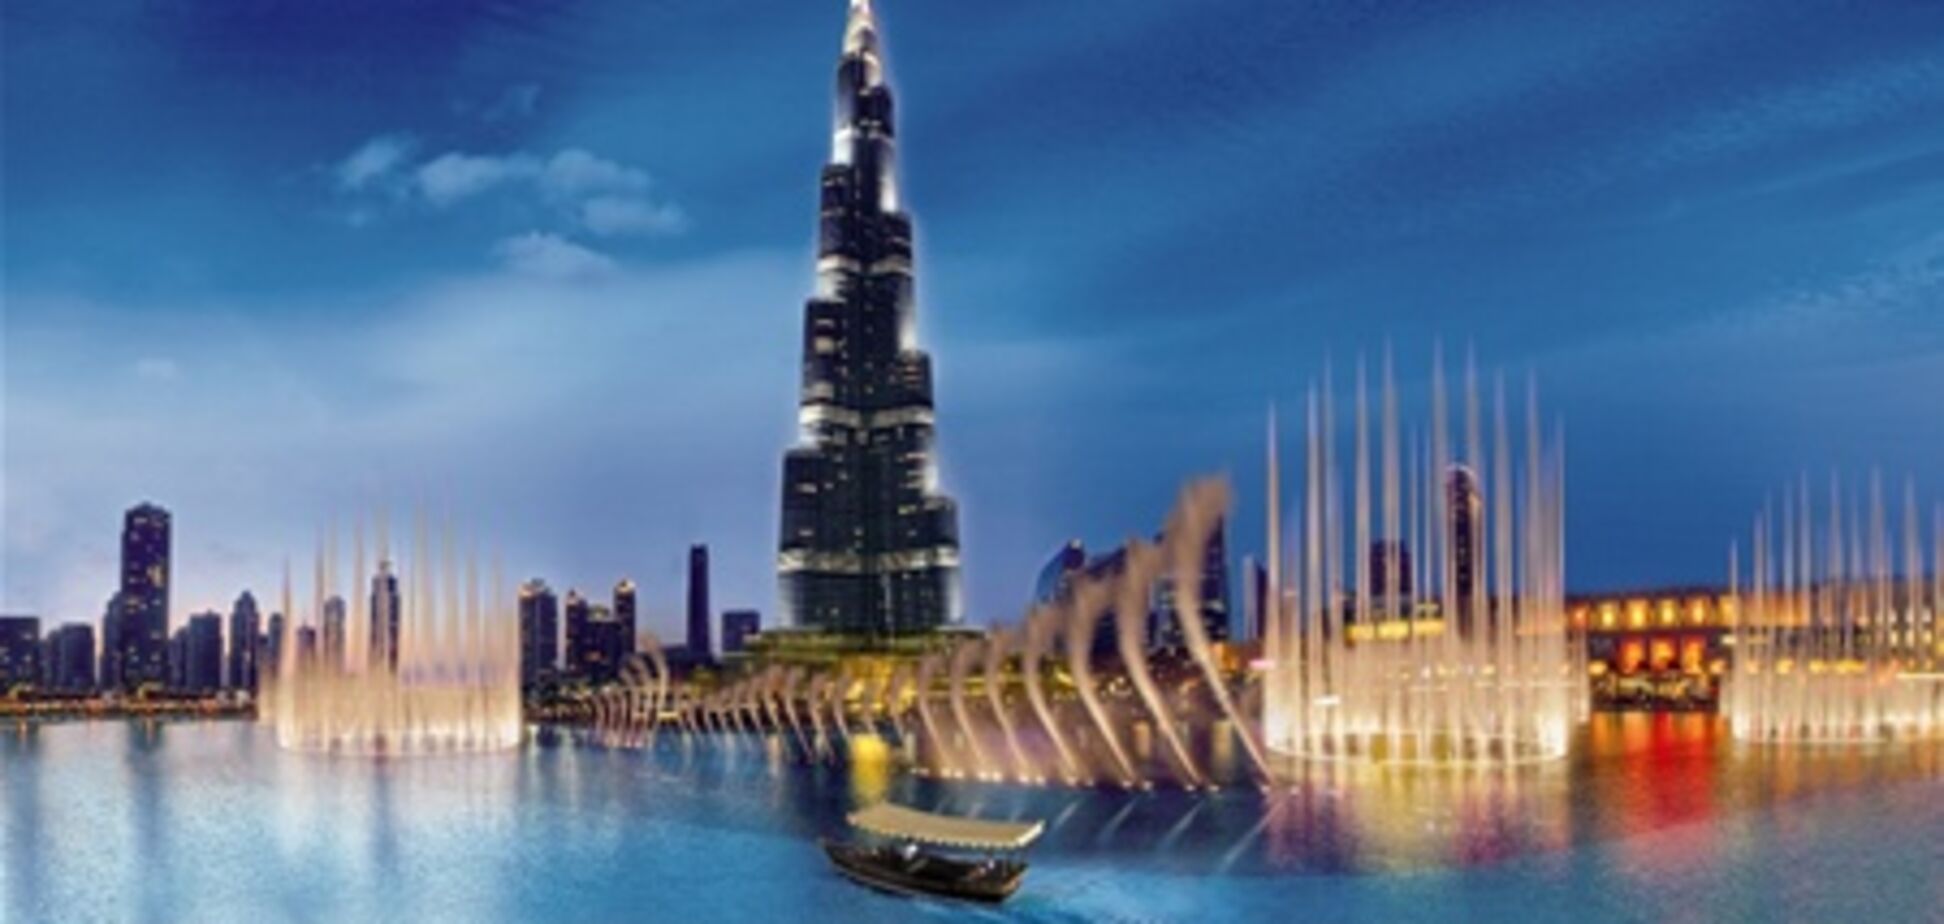 Новые водные экскурсии в Дубае